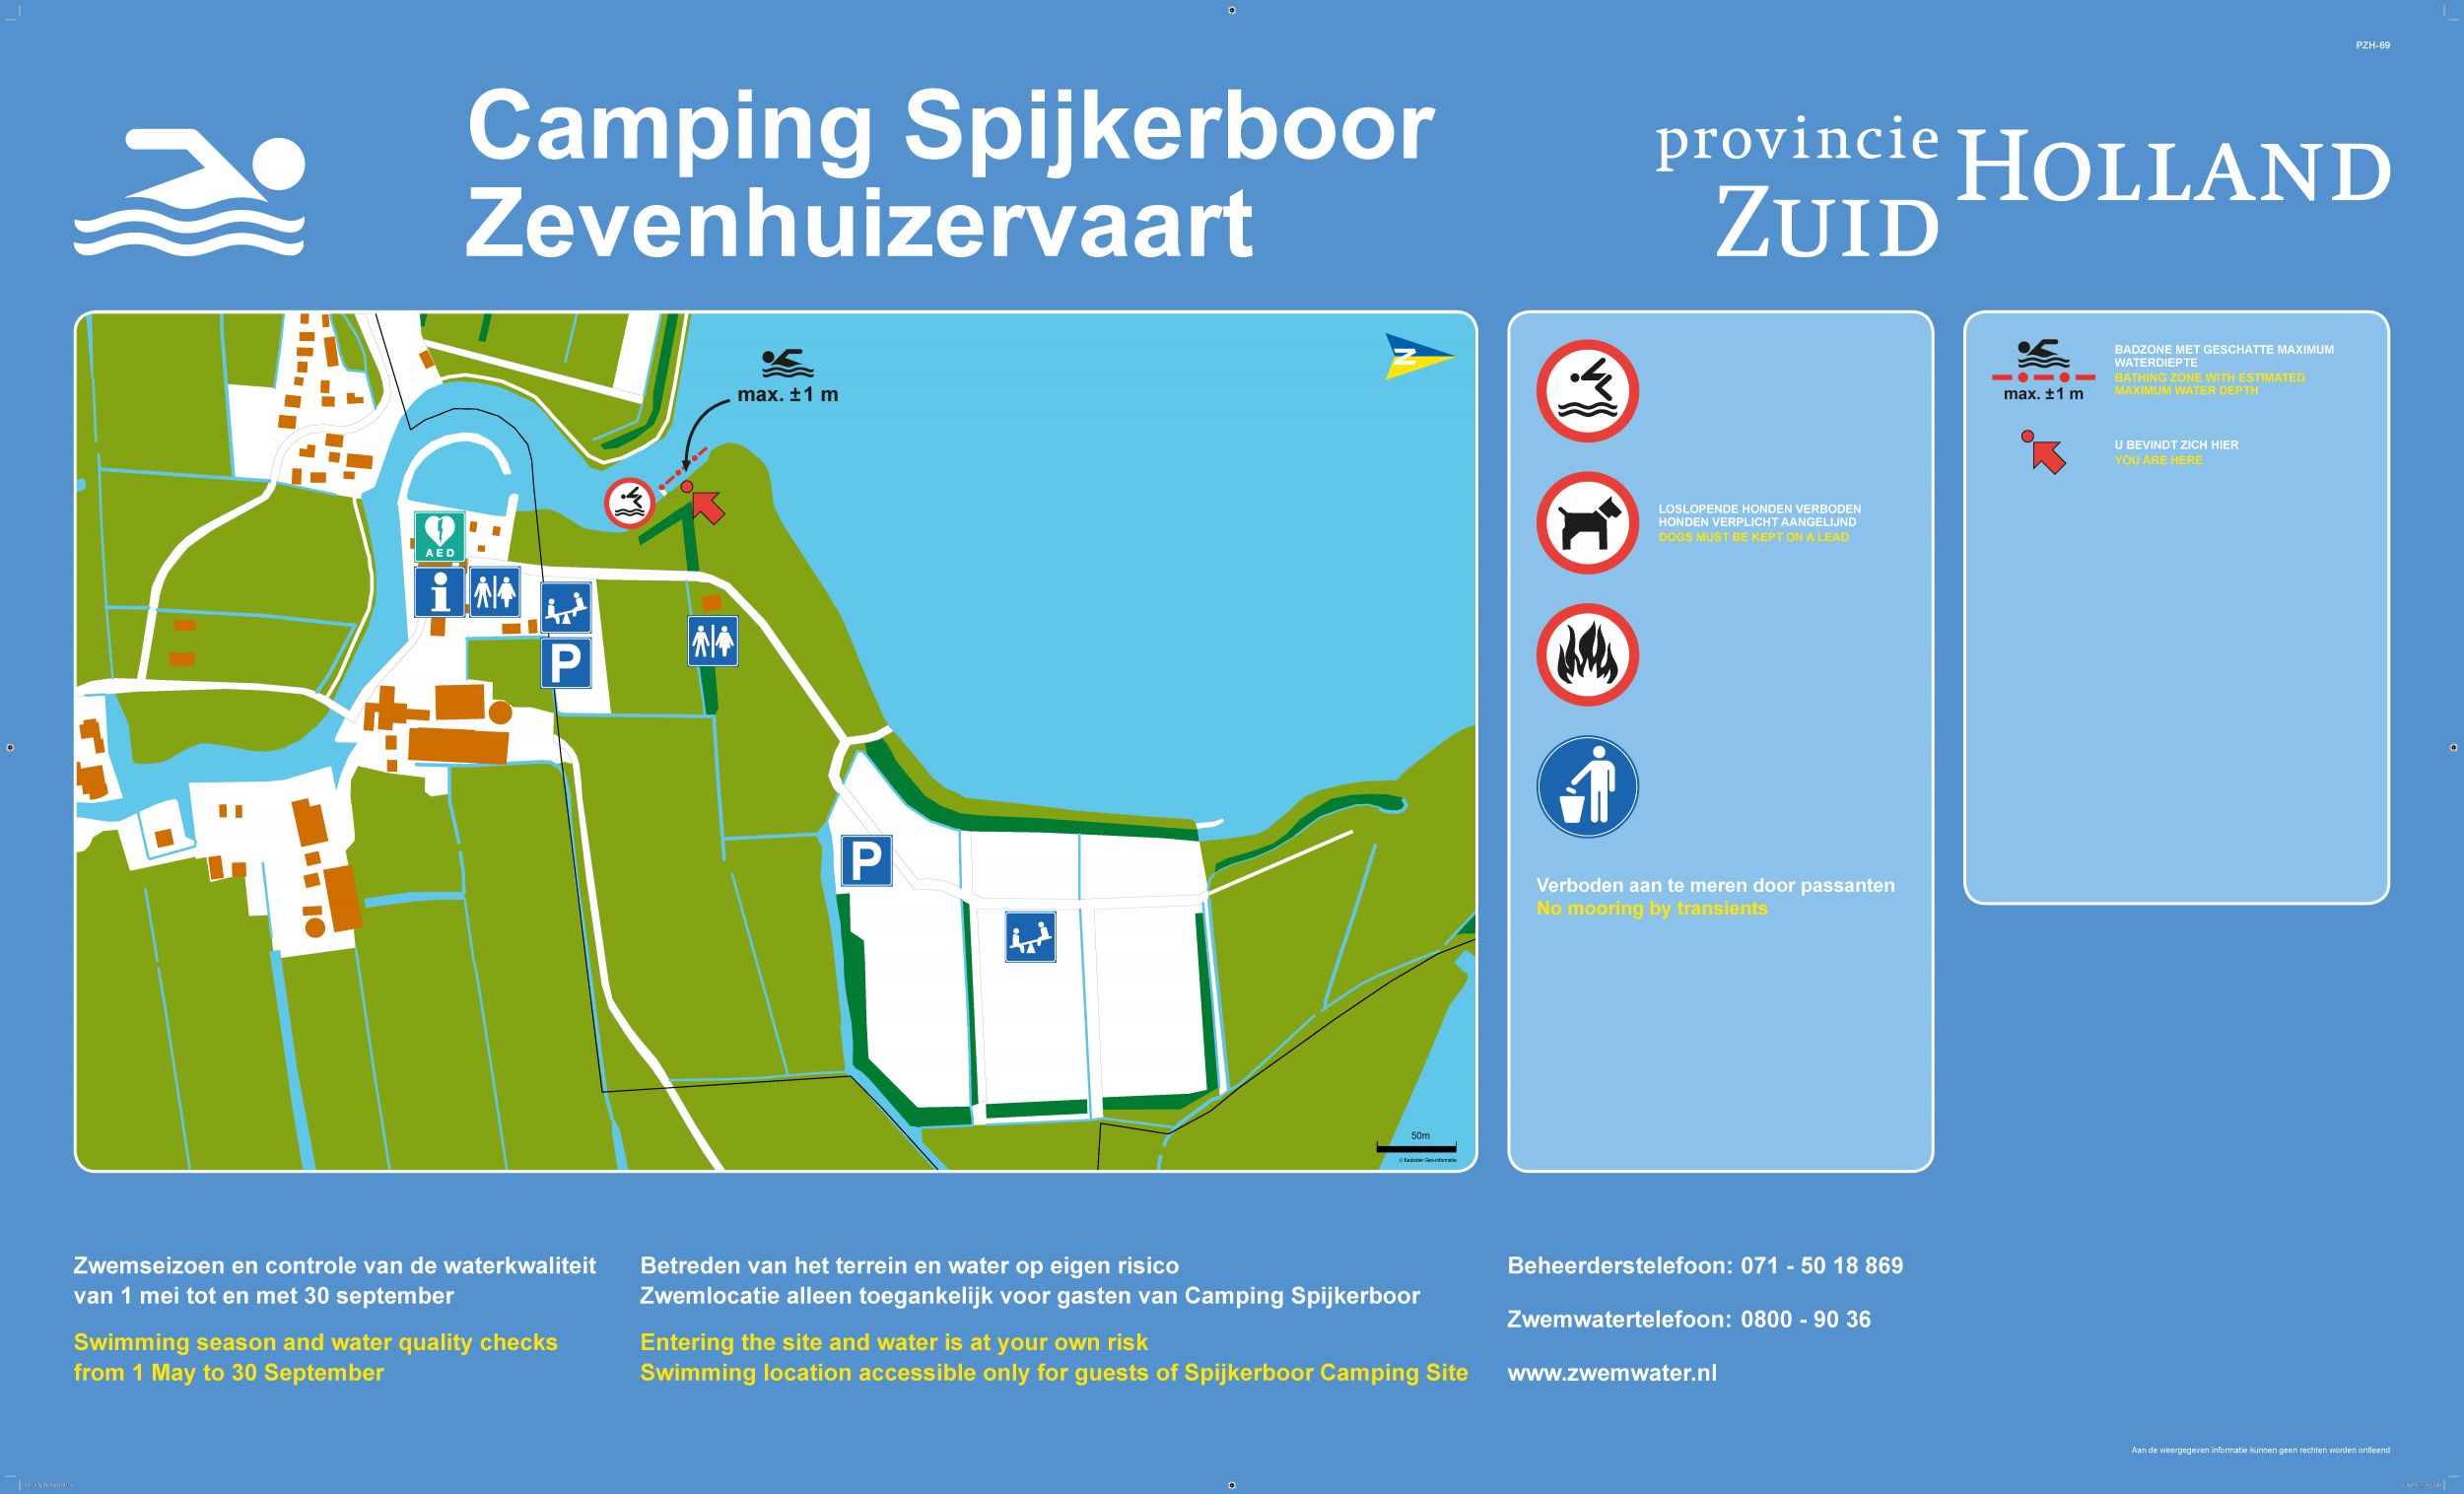 The information board at the swimming location Camping Spijkerboor, Zevenhuizervaart